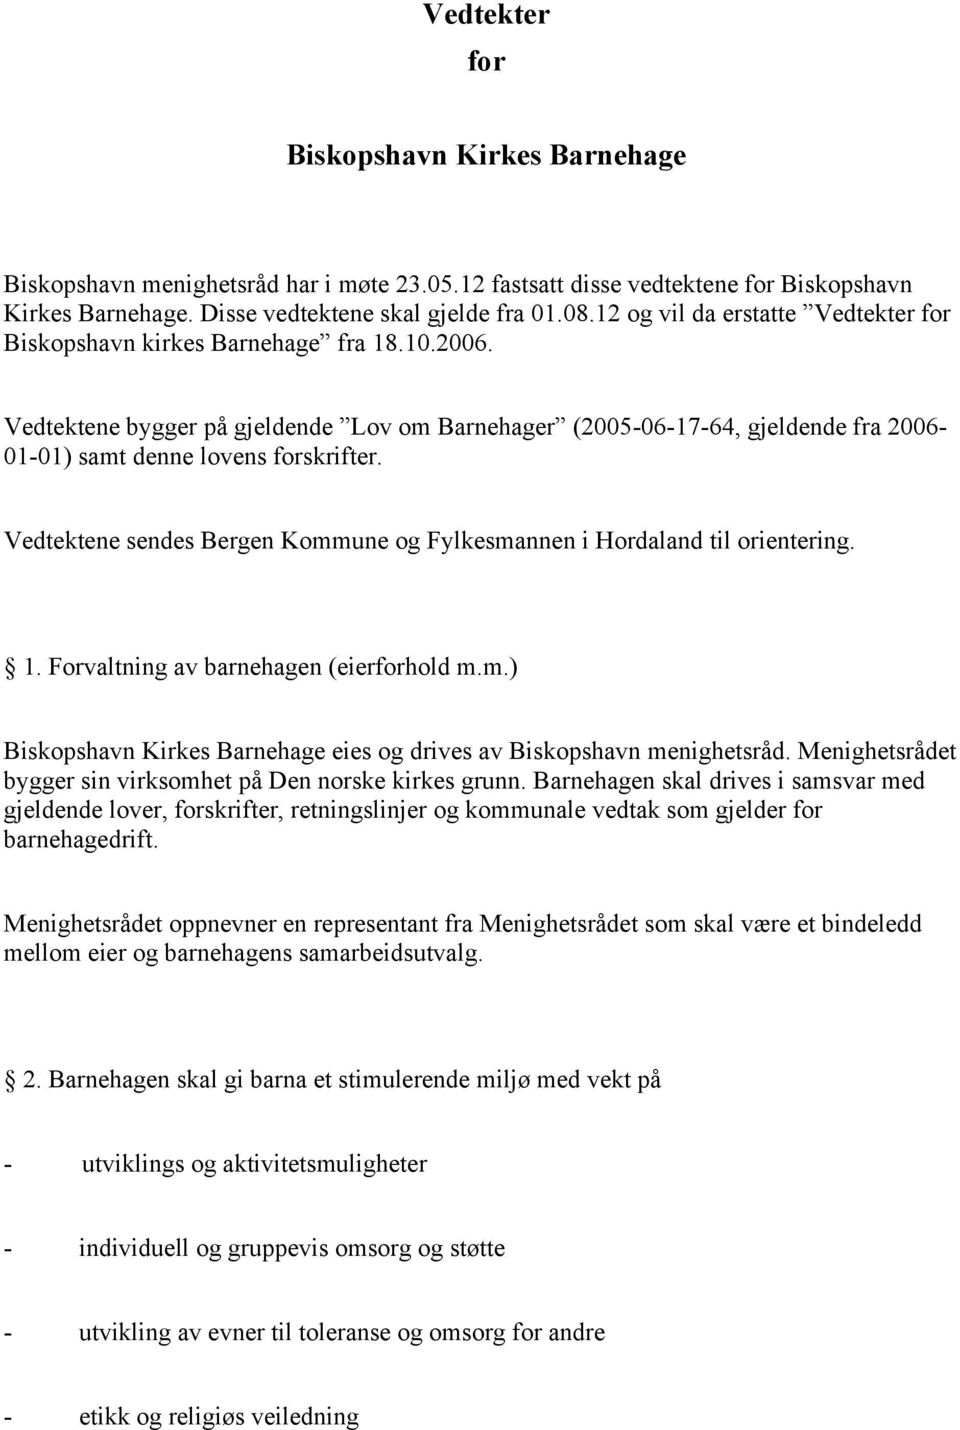 Vedtektene bygger på gjeldende Lov om Barnehager (2005-06-17-64, gjeldende fra 2006-01-01) samt denne lovens forskrifter. Vedtektene sendes Bergen Kommune og Fylkesmannen i Hordaland til orientering.